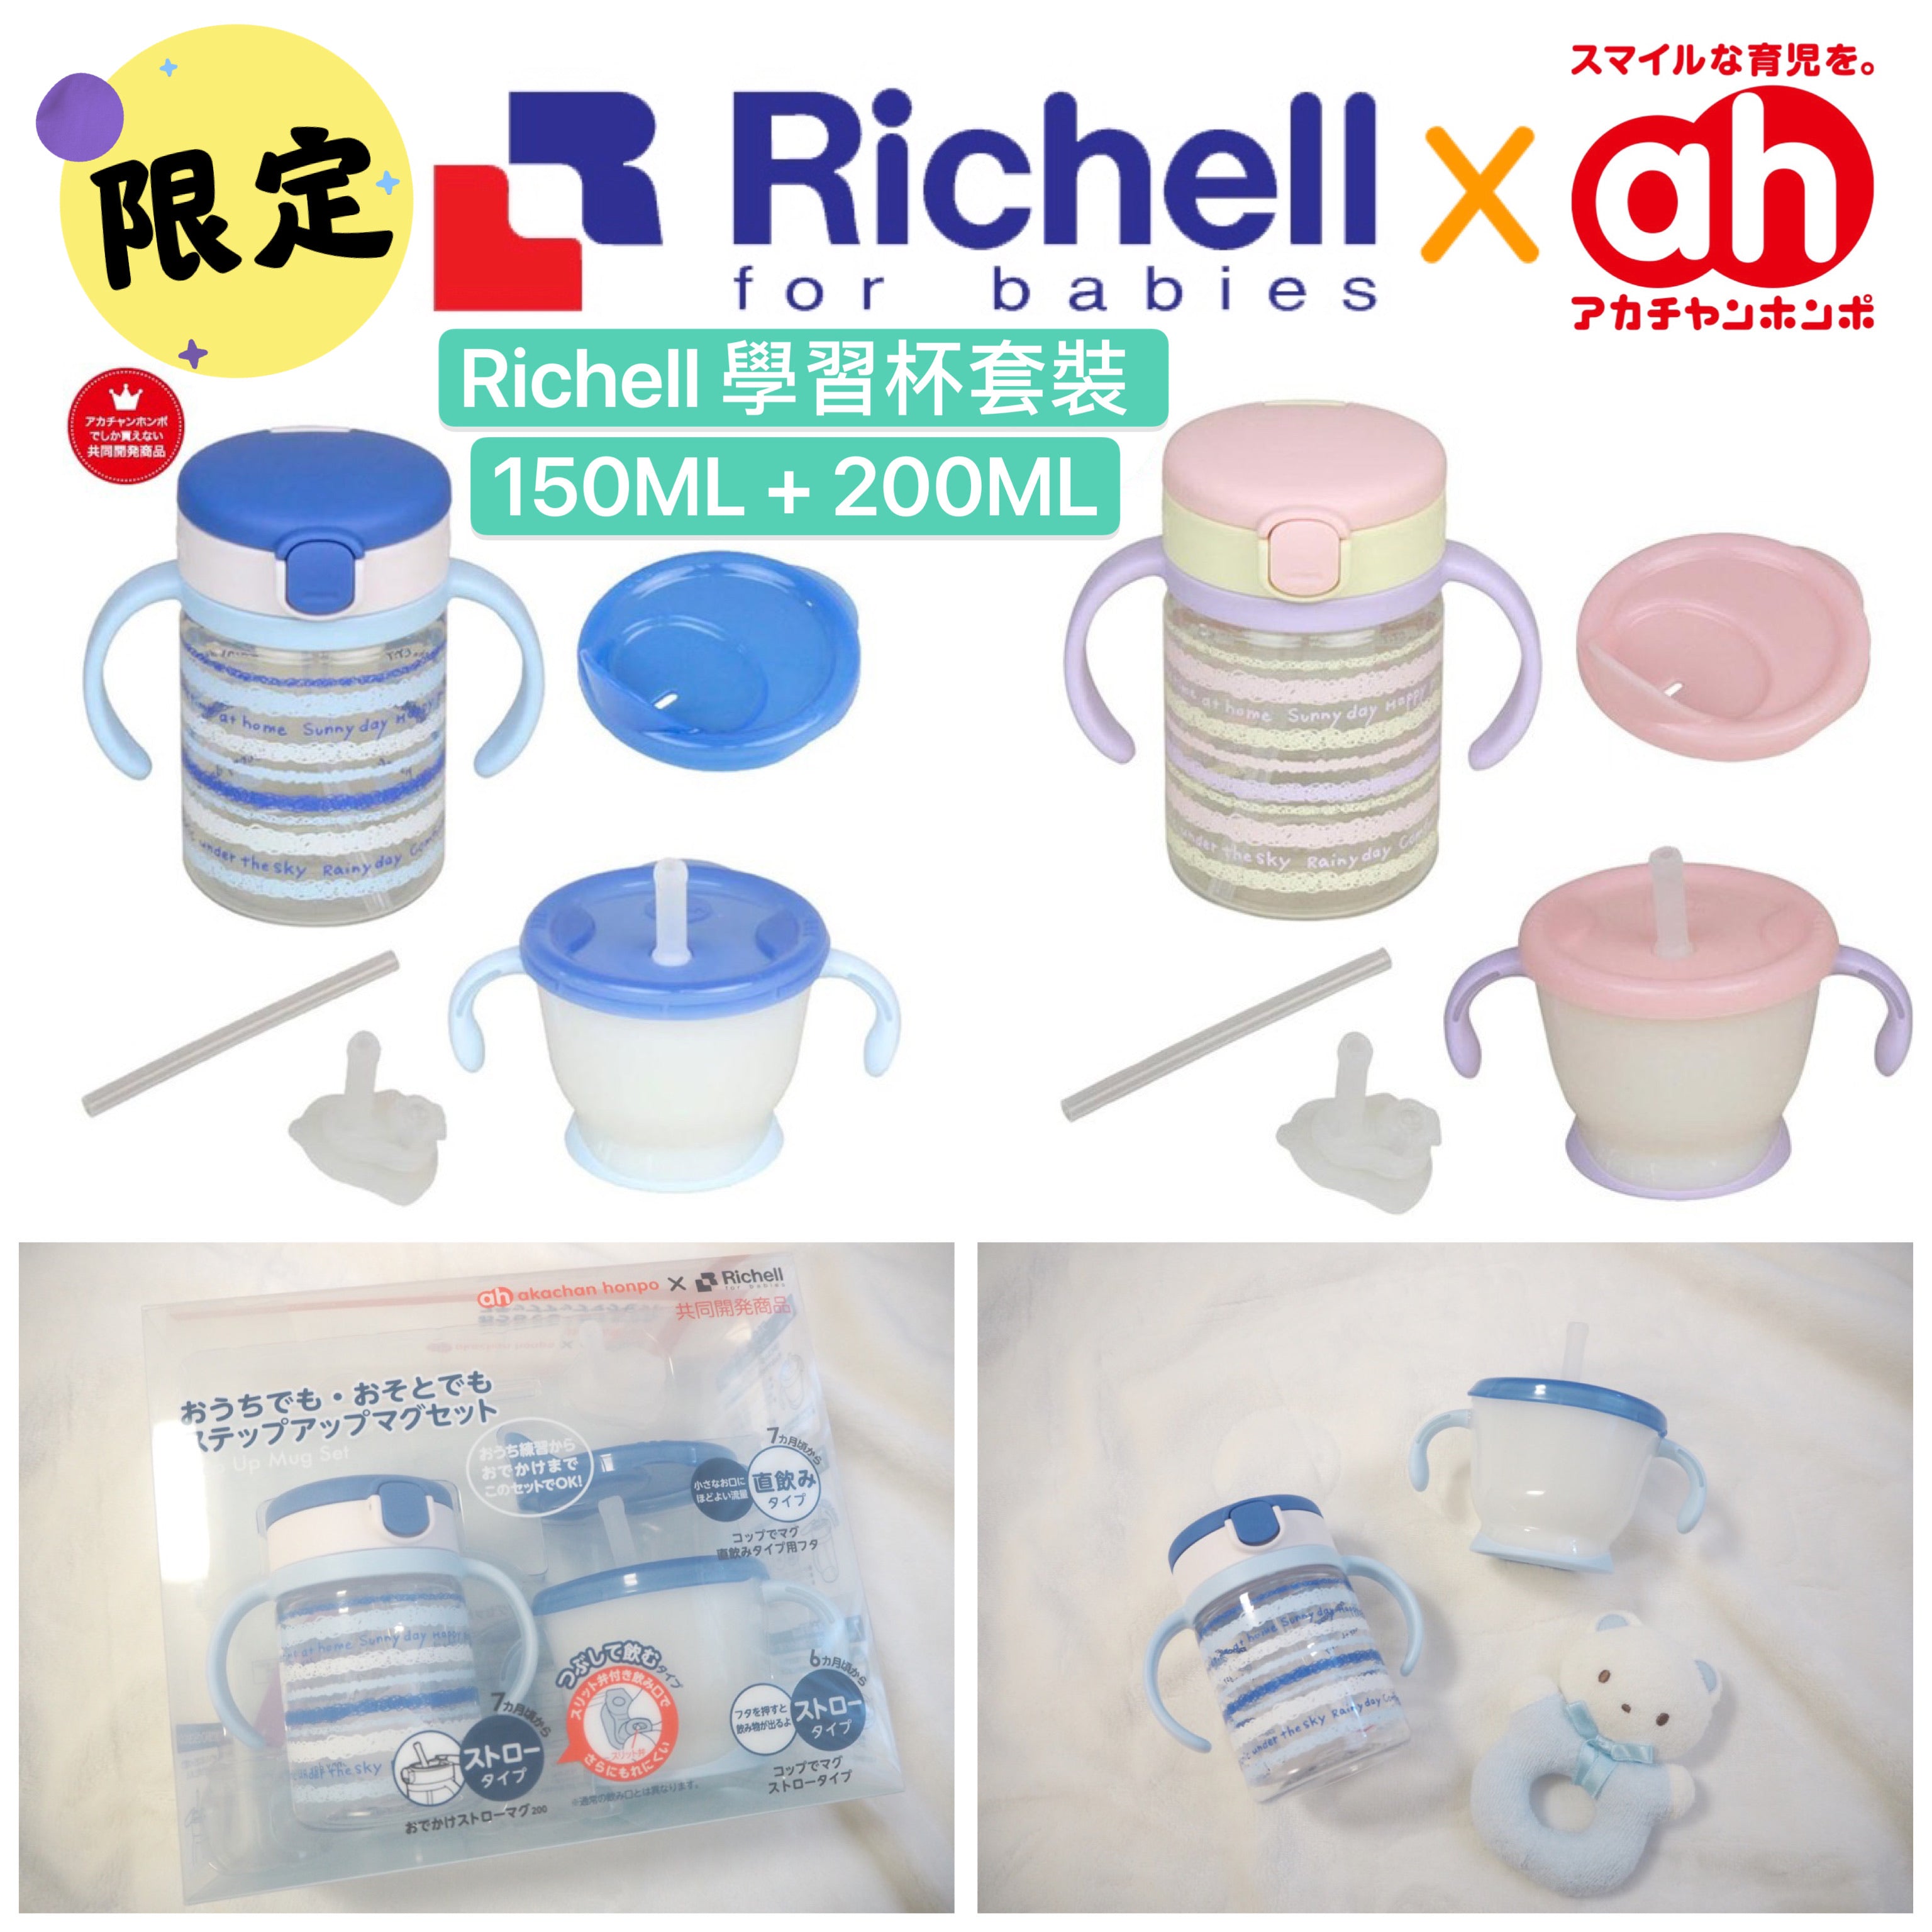 極罕有㊙️ 最新💡Akachan x richell 共同開發⭐️限量⁉️限定‼️ Richell 兒童吸管杯套裝 150ml+200ml 🌟